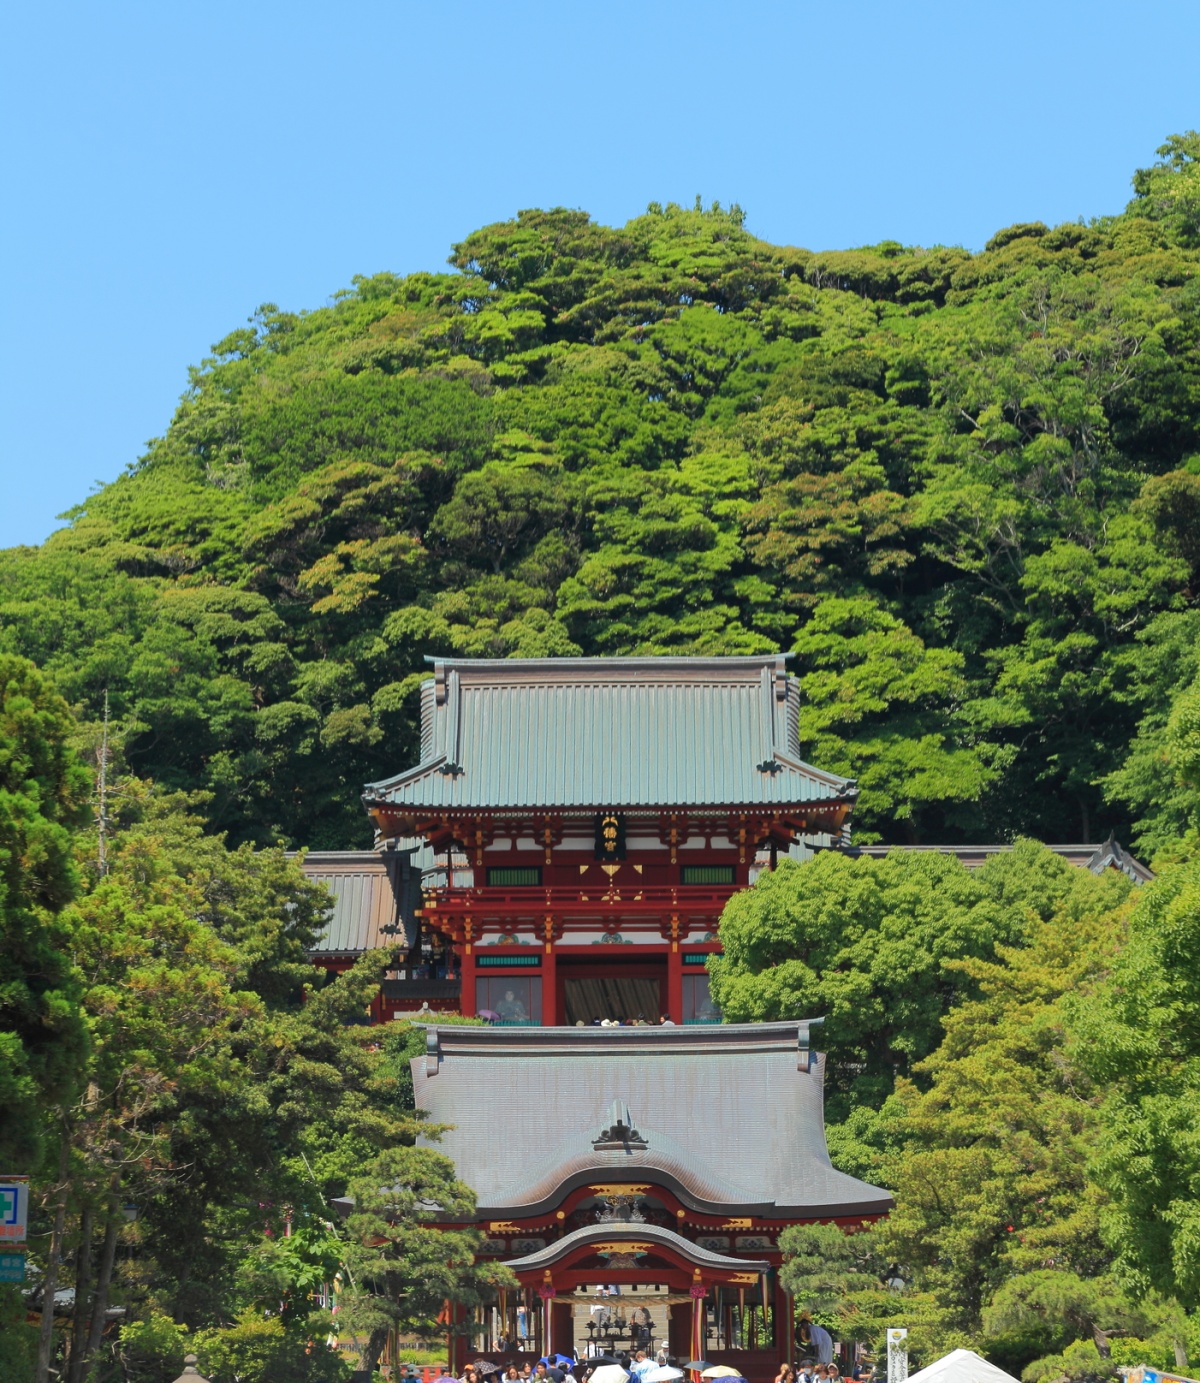 7. ศาลเจ้าสึรุงะโอกะ ฮาจิมังกู  (Tsurugaoka Hachimangu Shrine)